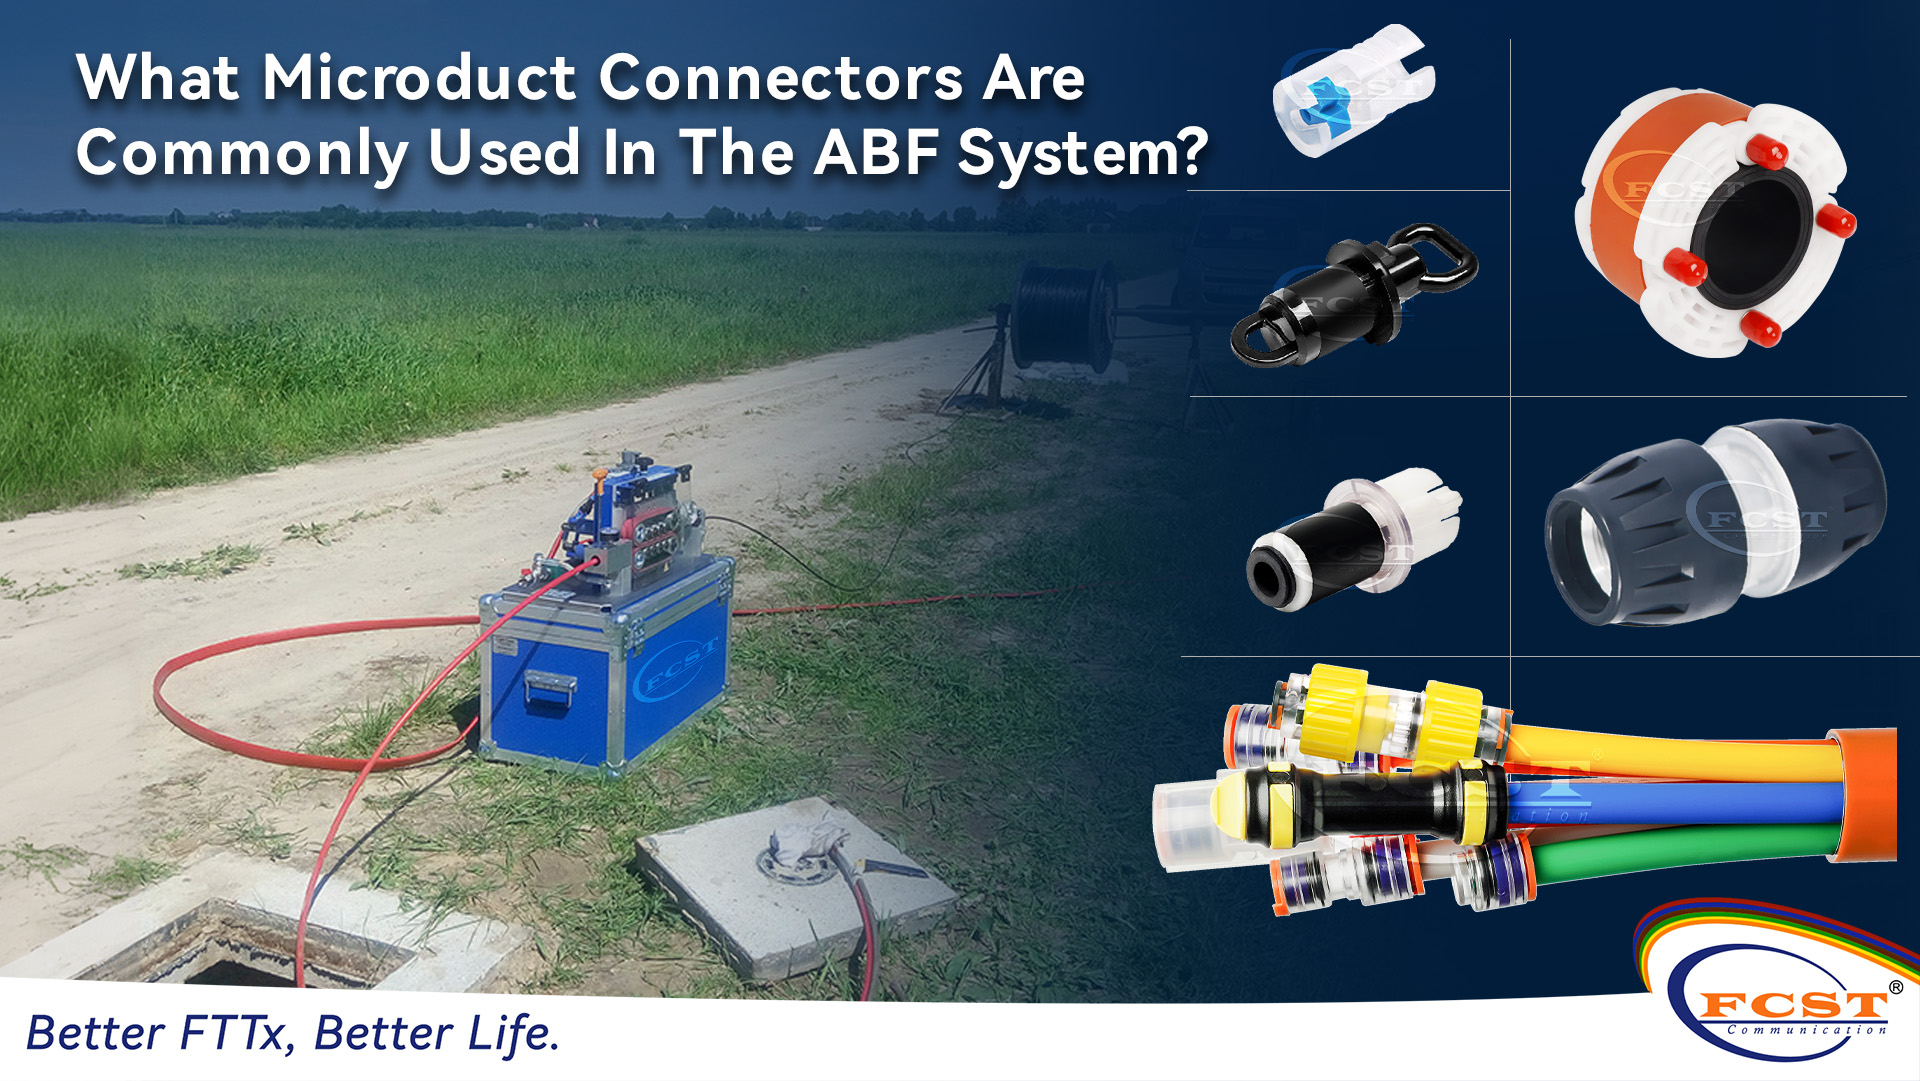 ¿Qué conectores de microductos se usan comúnmente en el sistema ABF?